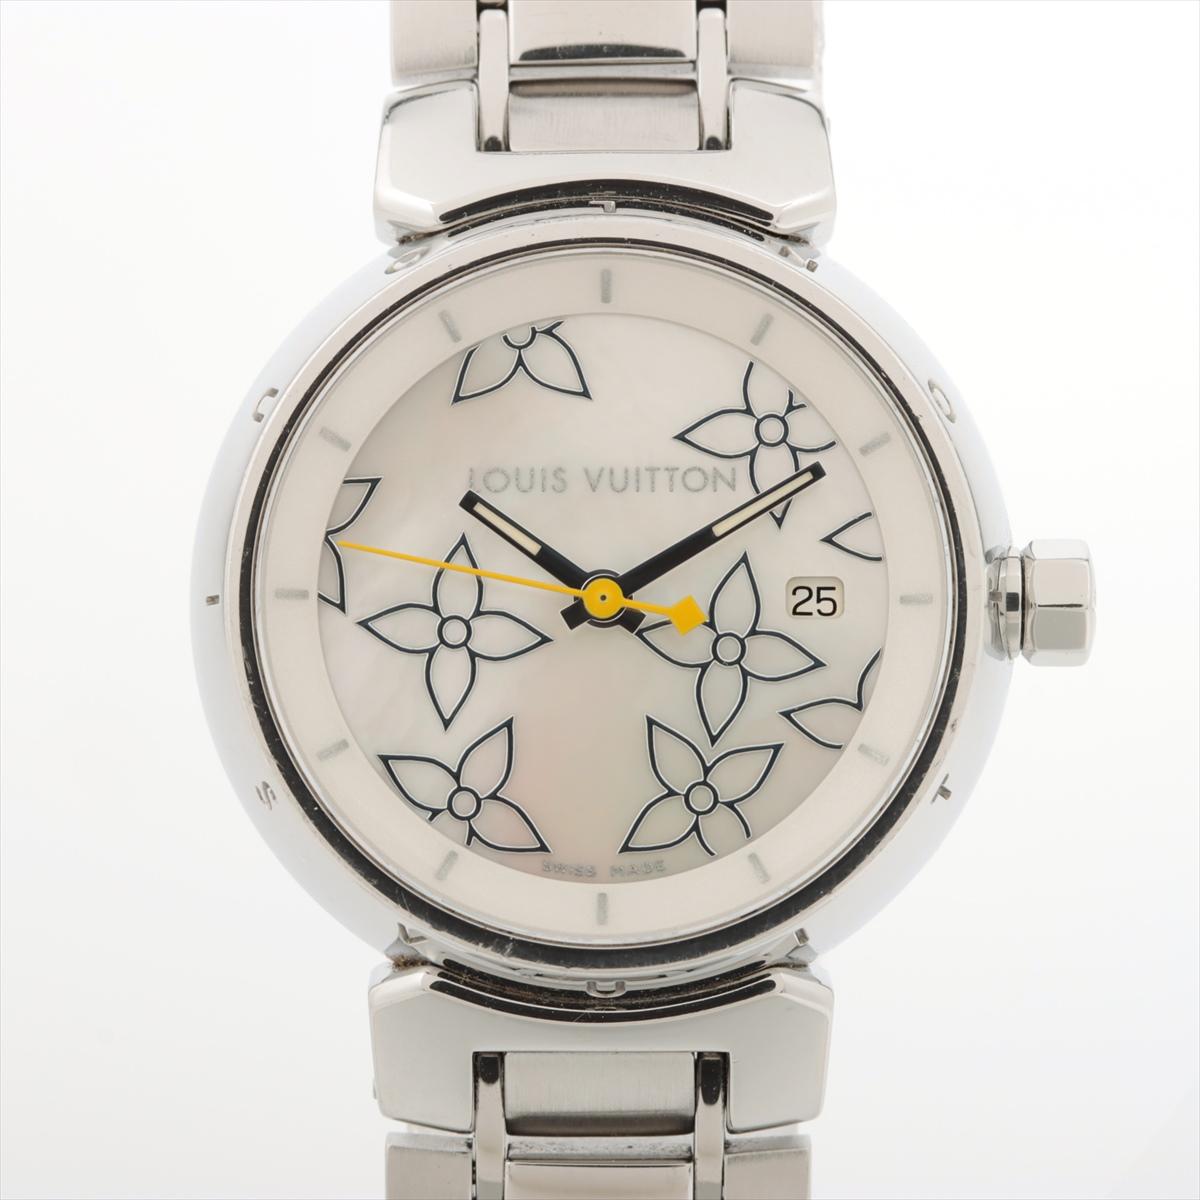 AU DÉTAIL : 2 670

La montre Louis Vuitton Tambour en acier inoxydable est l'incarnation de l'élégance et de la sophistication intemporelles, alliant un savoir-faire exquis à un chronométrage de précision. Ce remarquable garde-temps est doté d'un